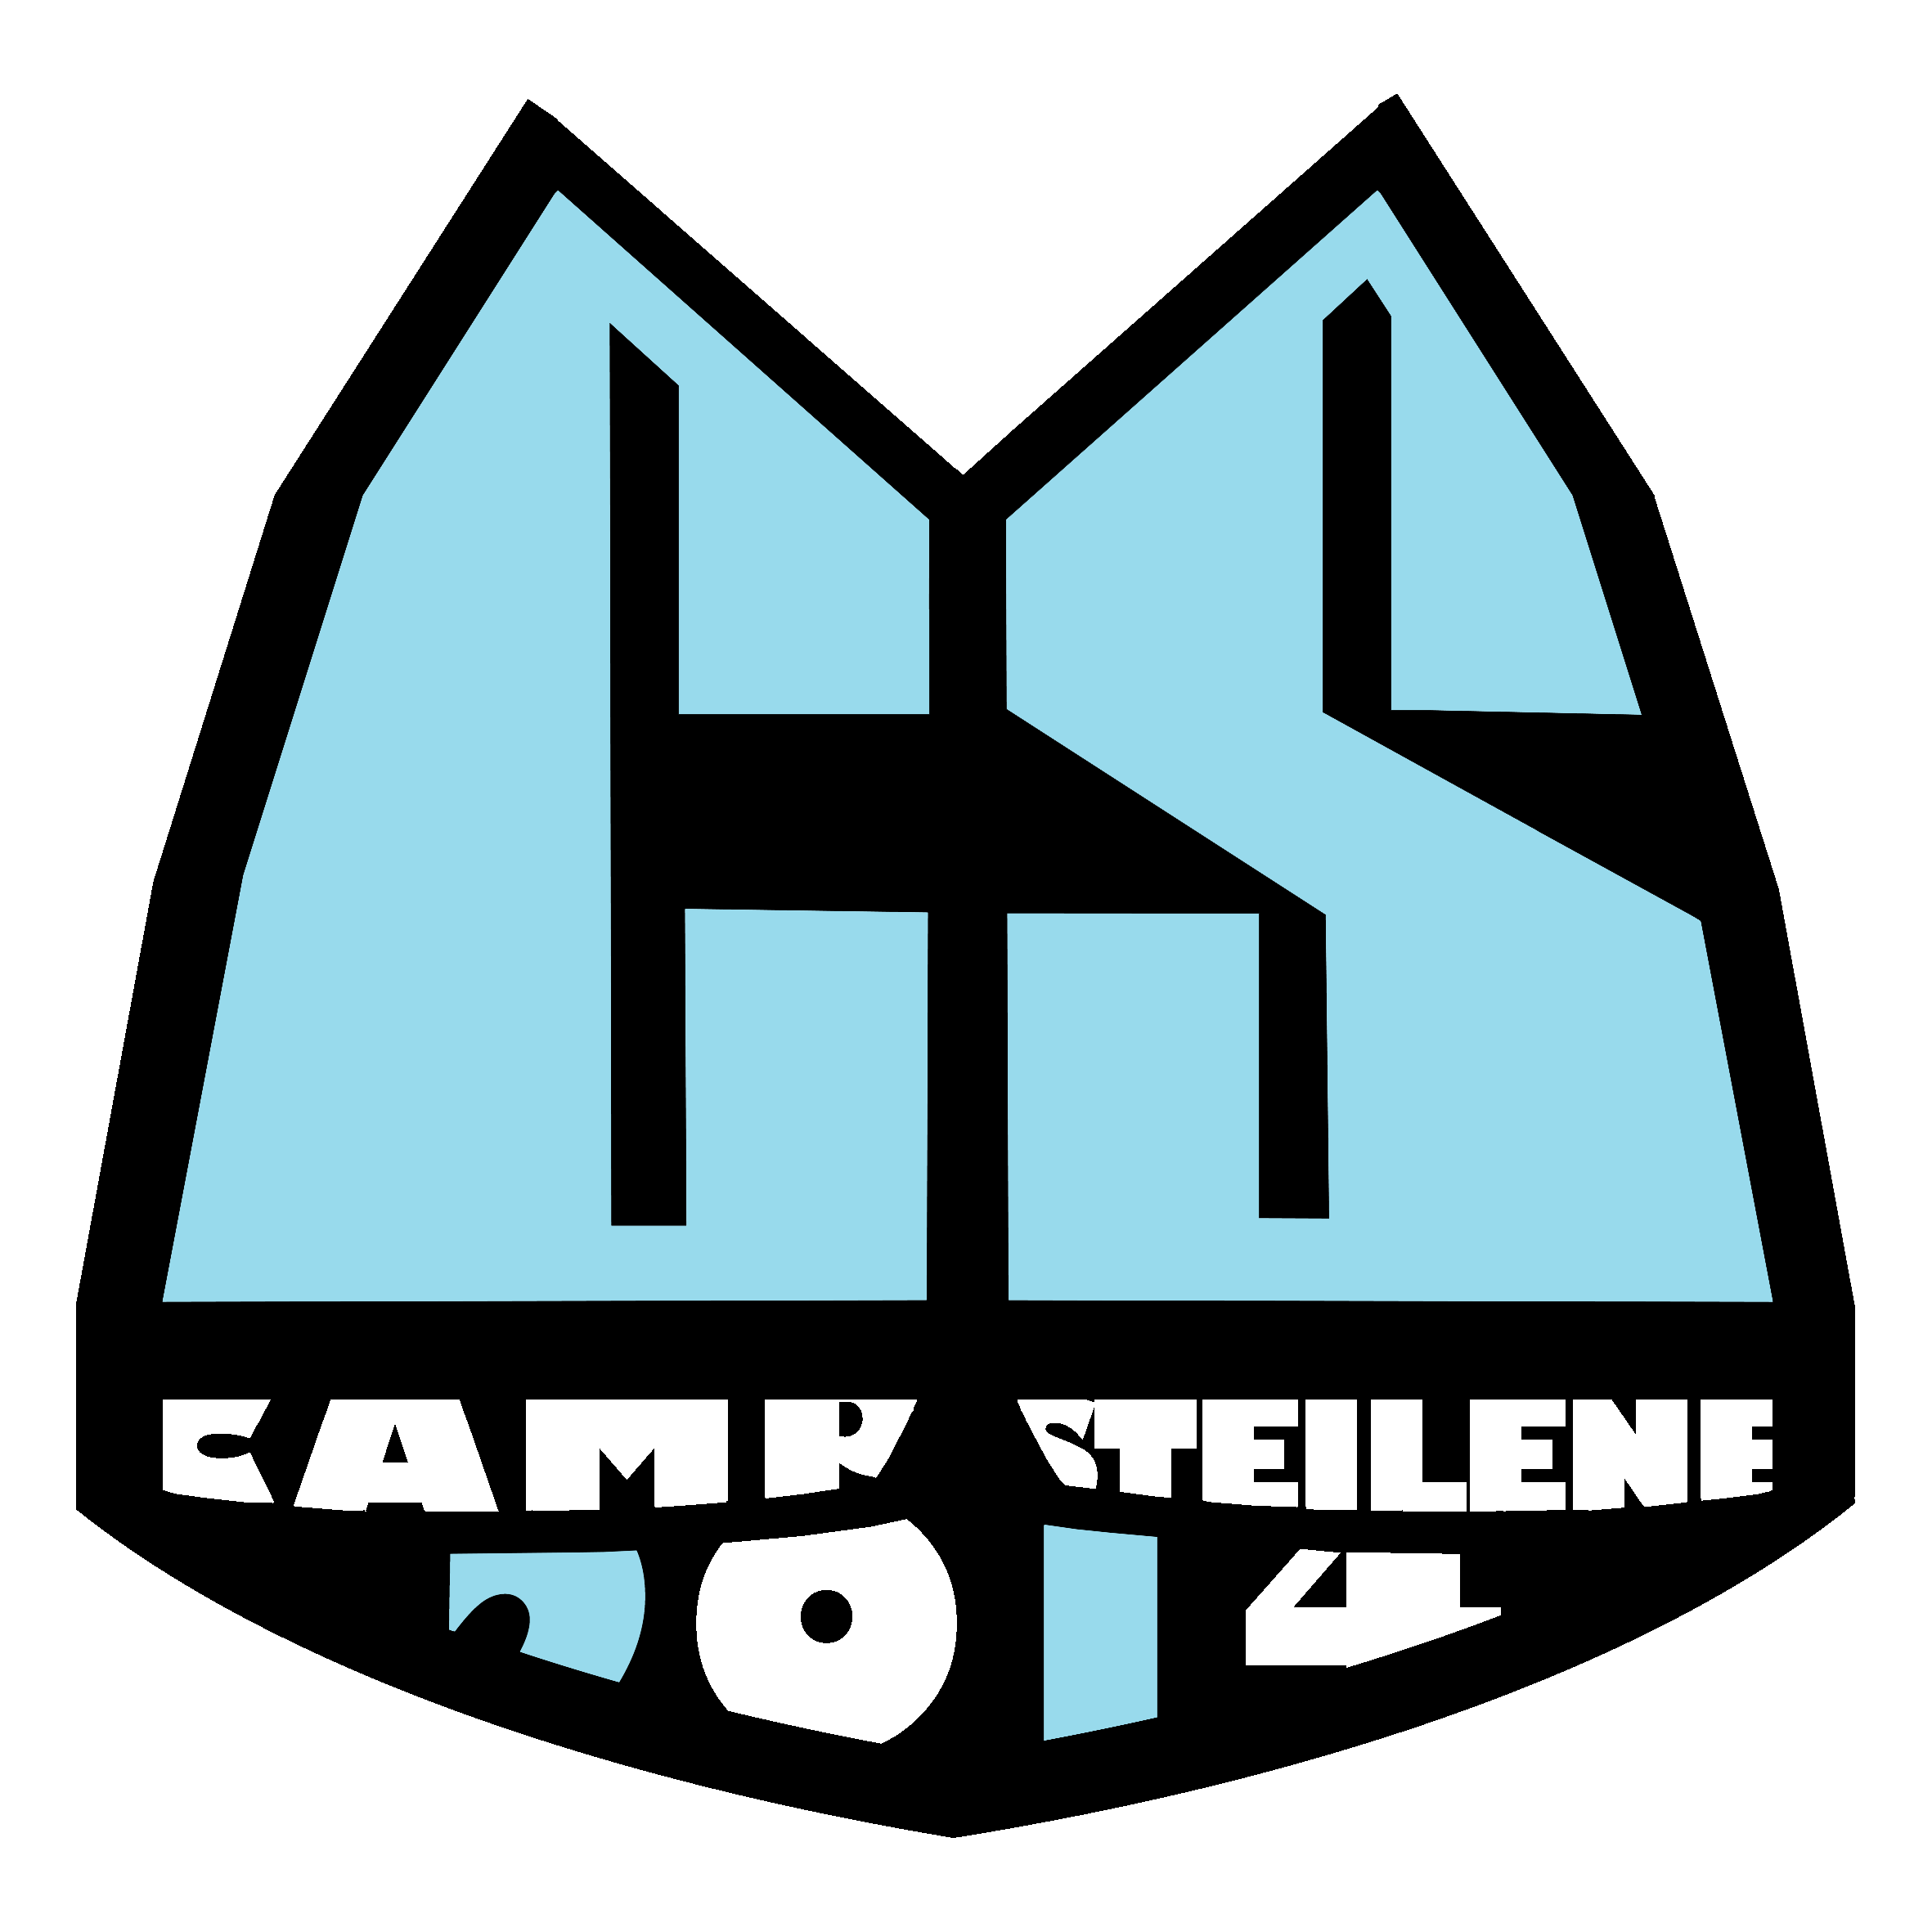 Camp Steilene 2014